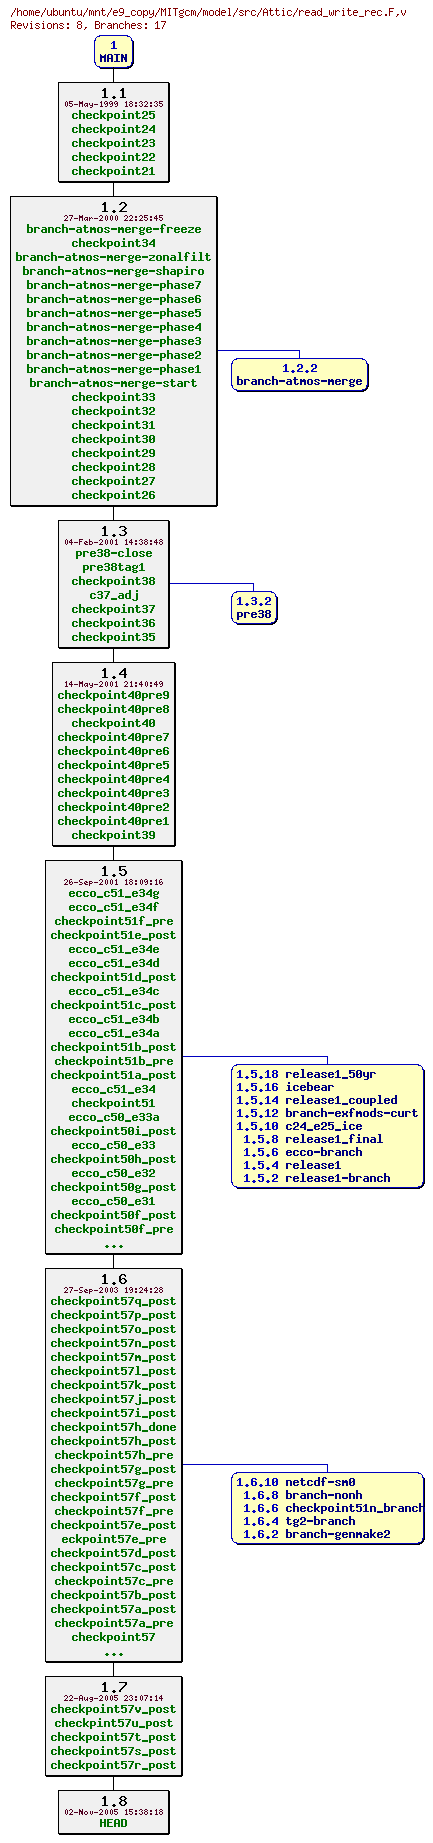 Revisions of MITgcm/model/src/read_write_rec.F